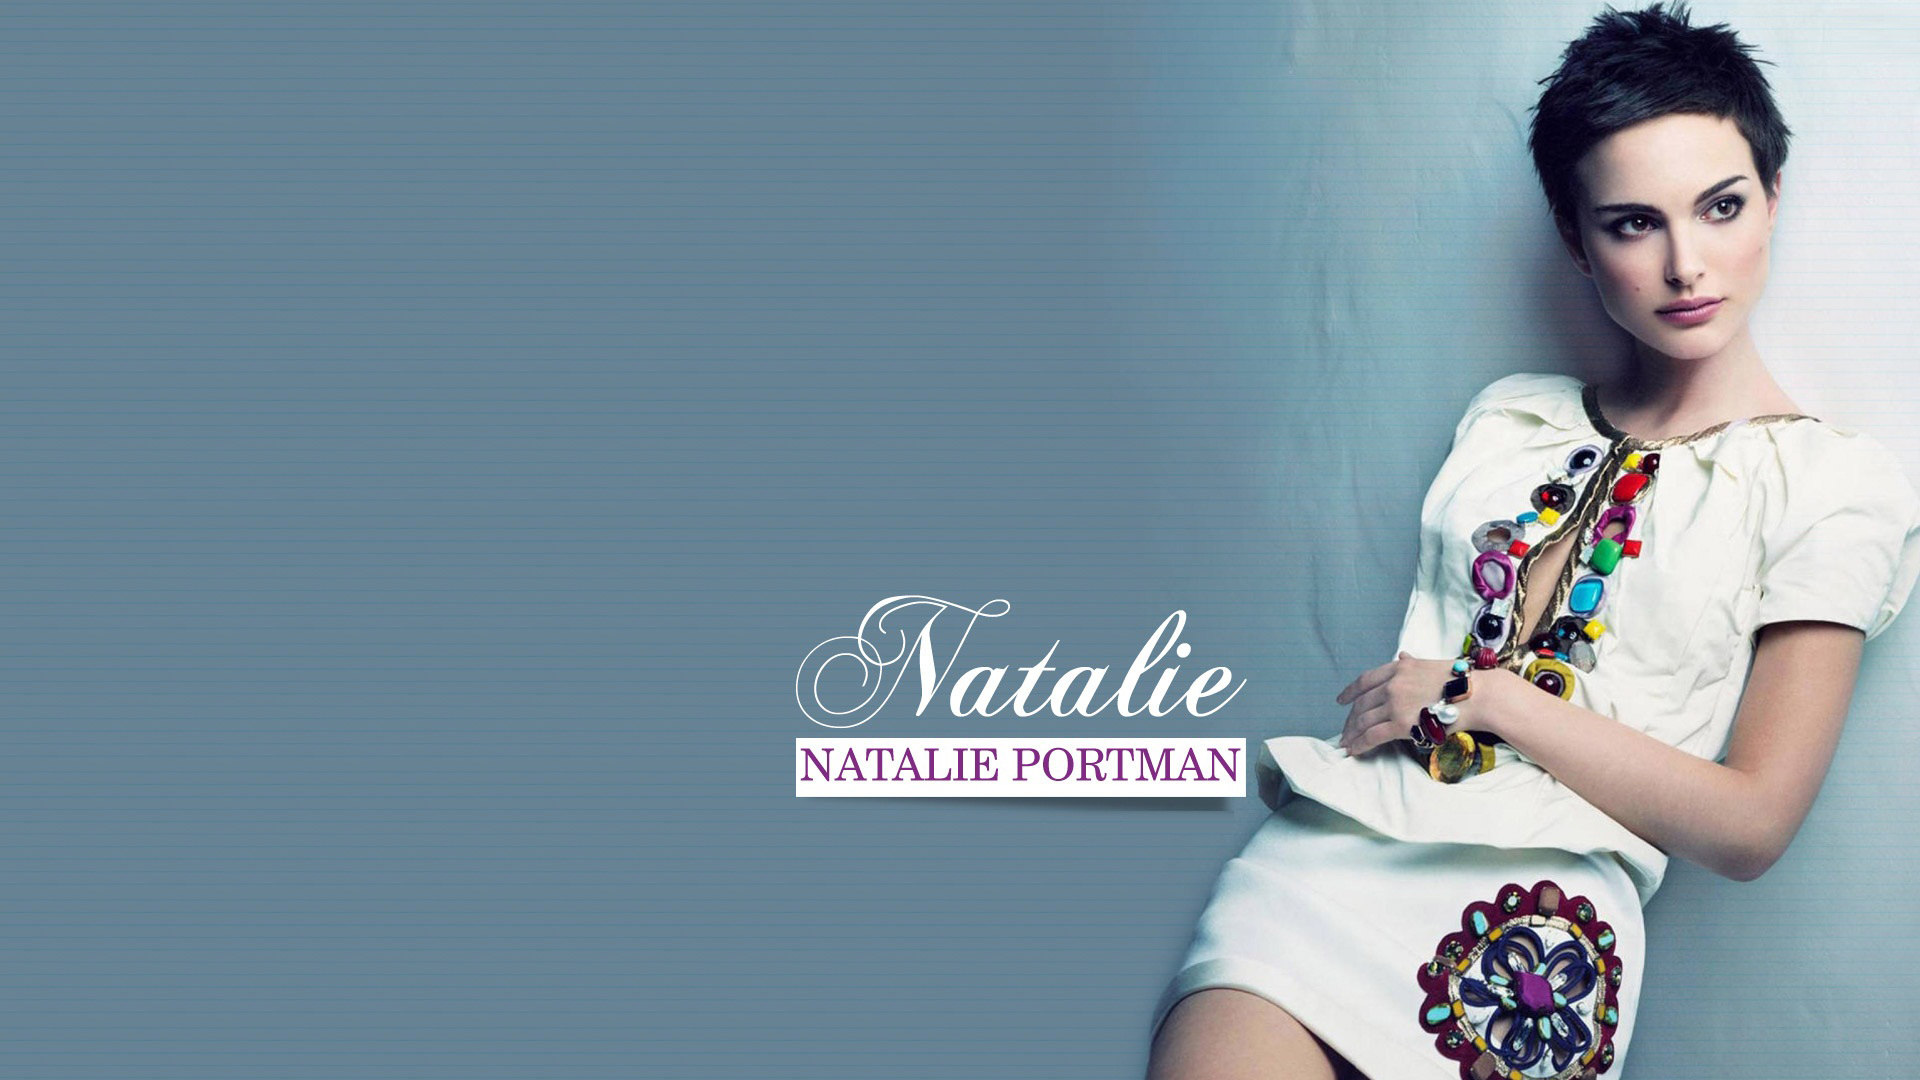 Natalie Portman Spicy Pictures | Actress Natalie Portman Wallpapers | Wallpaper 4of 14 | Natalie Portman Spicy Wallpapers